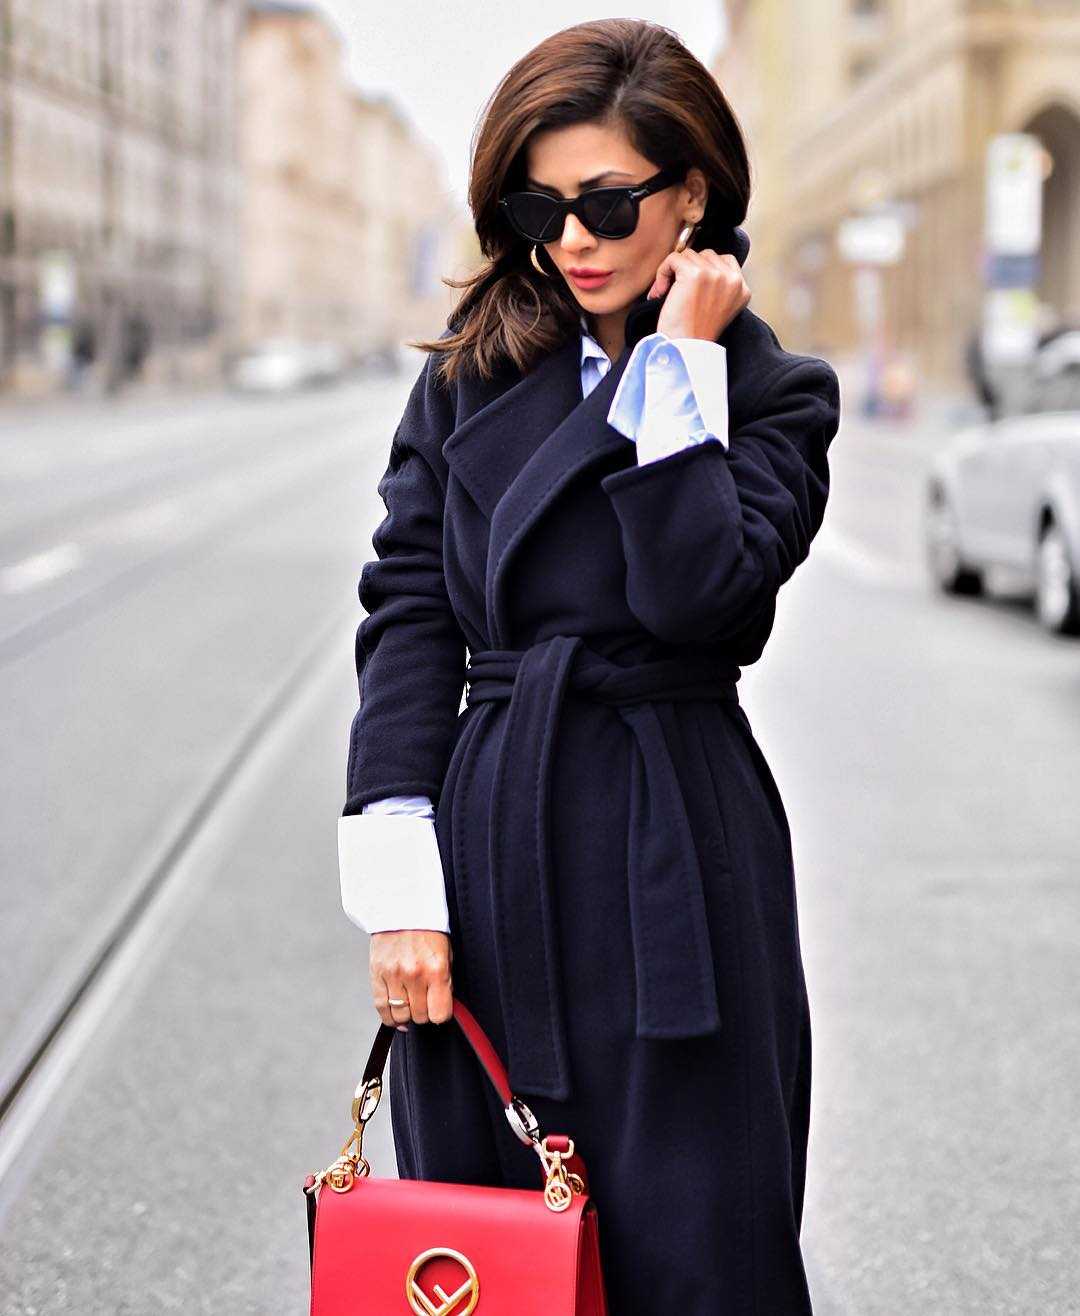 Черное пальто: с чем носить базовую вещь женского гардероба? про одежду - популярный интернет-журнал